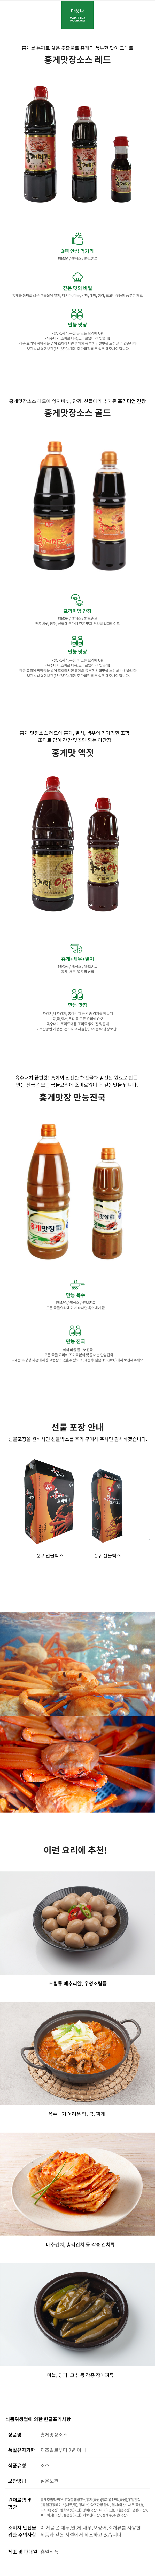 홍일점 홍게맛장 900ml 2개+200ml 맛간장 레드 편스토랑 남보라 맛간장